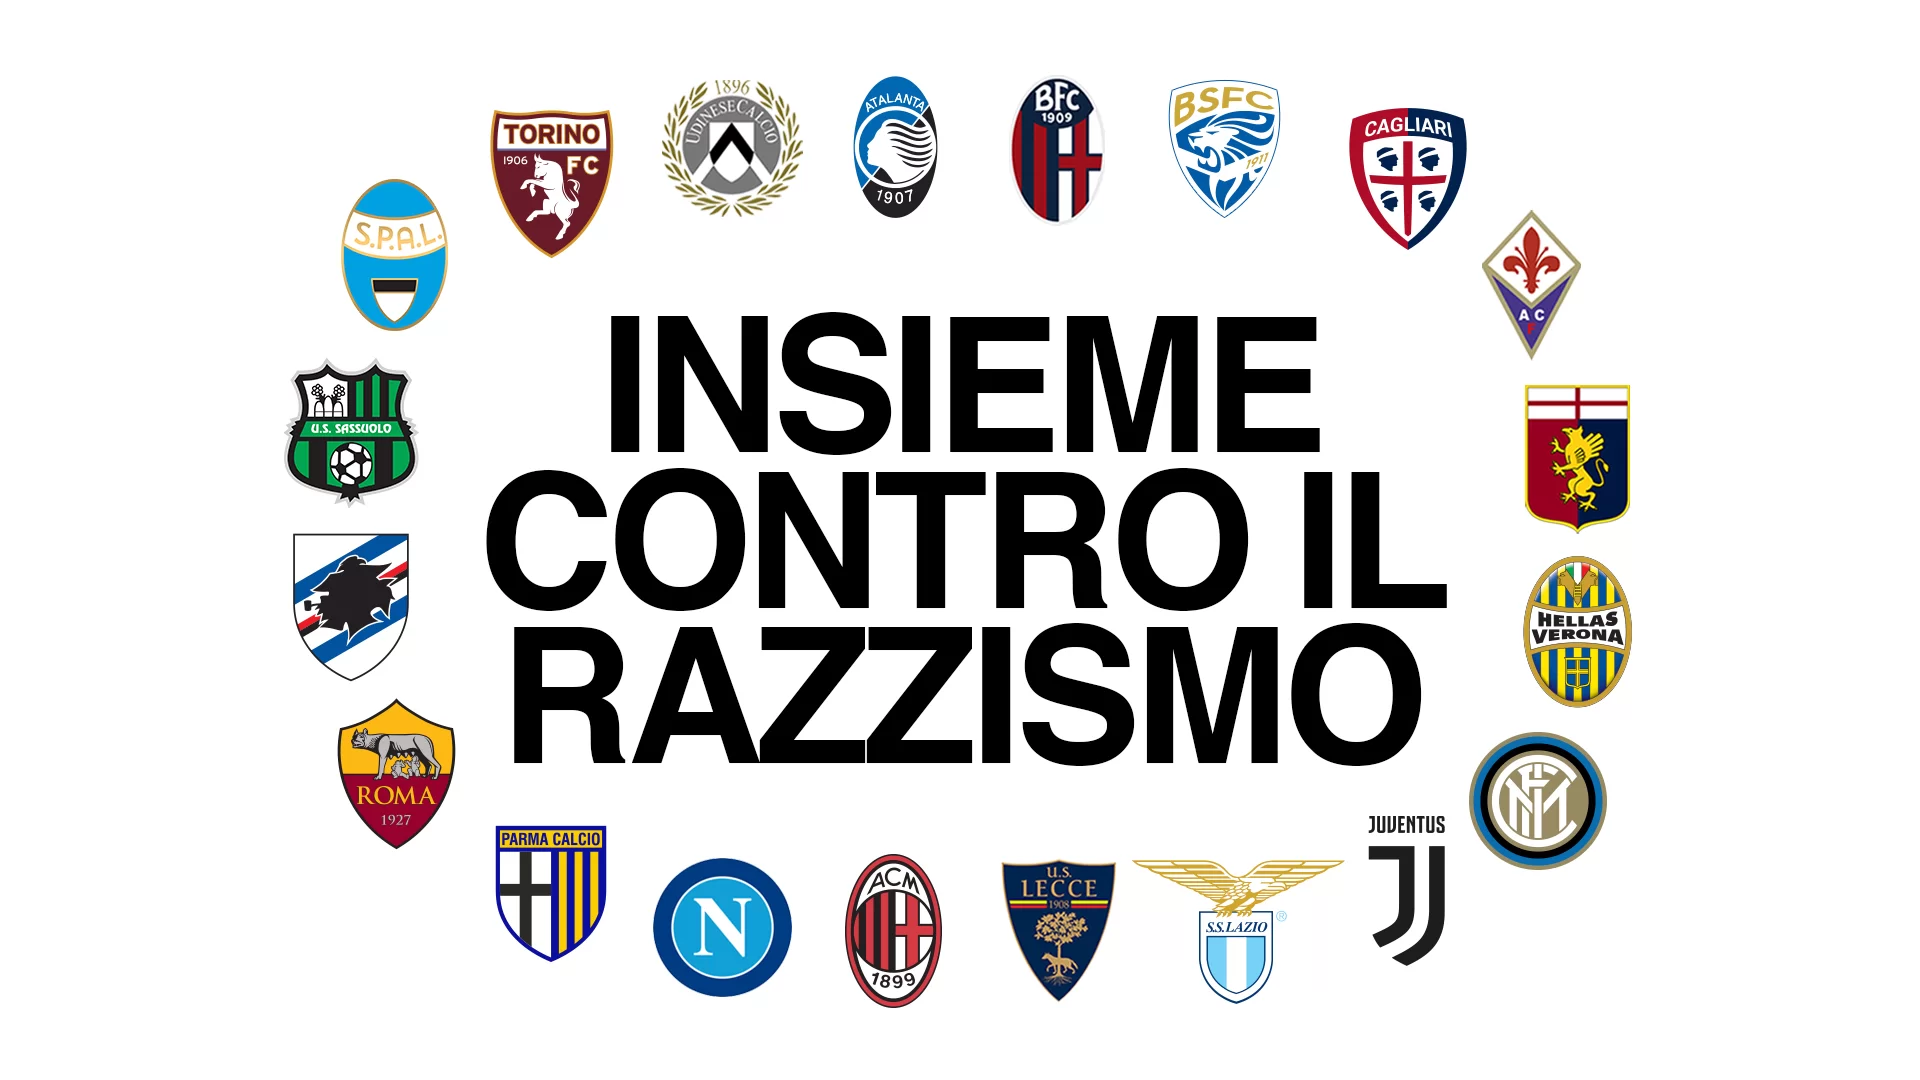 Lettera aperta contro il razzismo: anche la Juventus tra i club firmatari